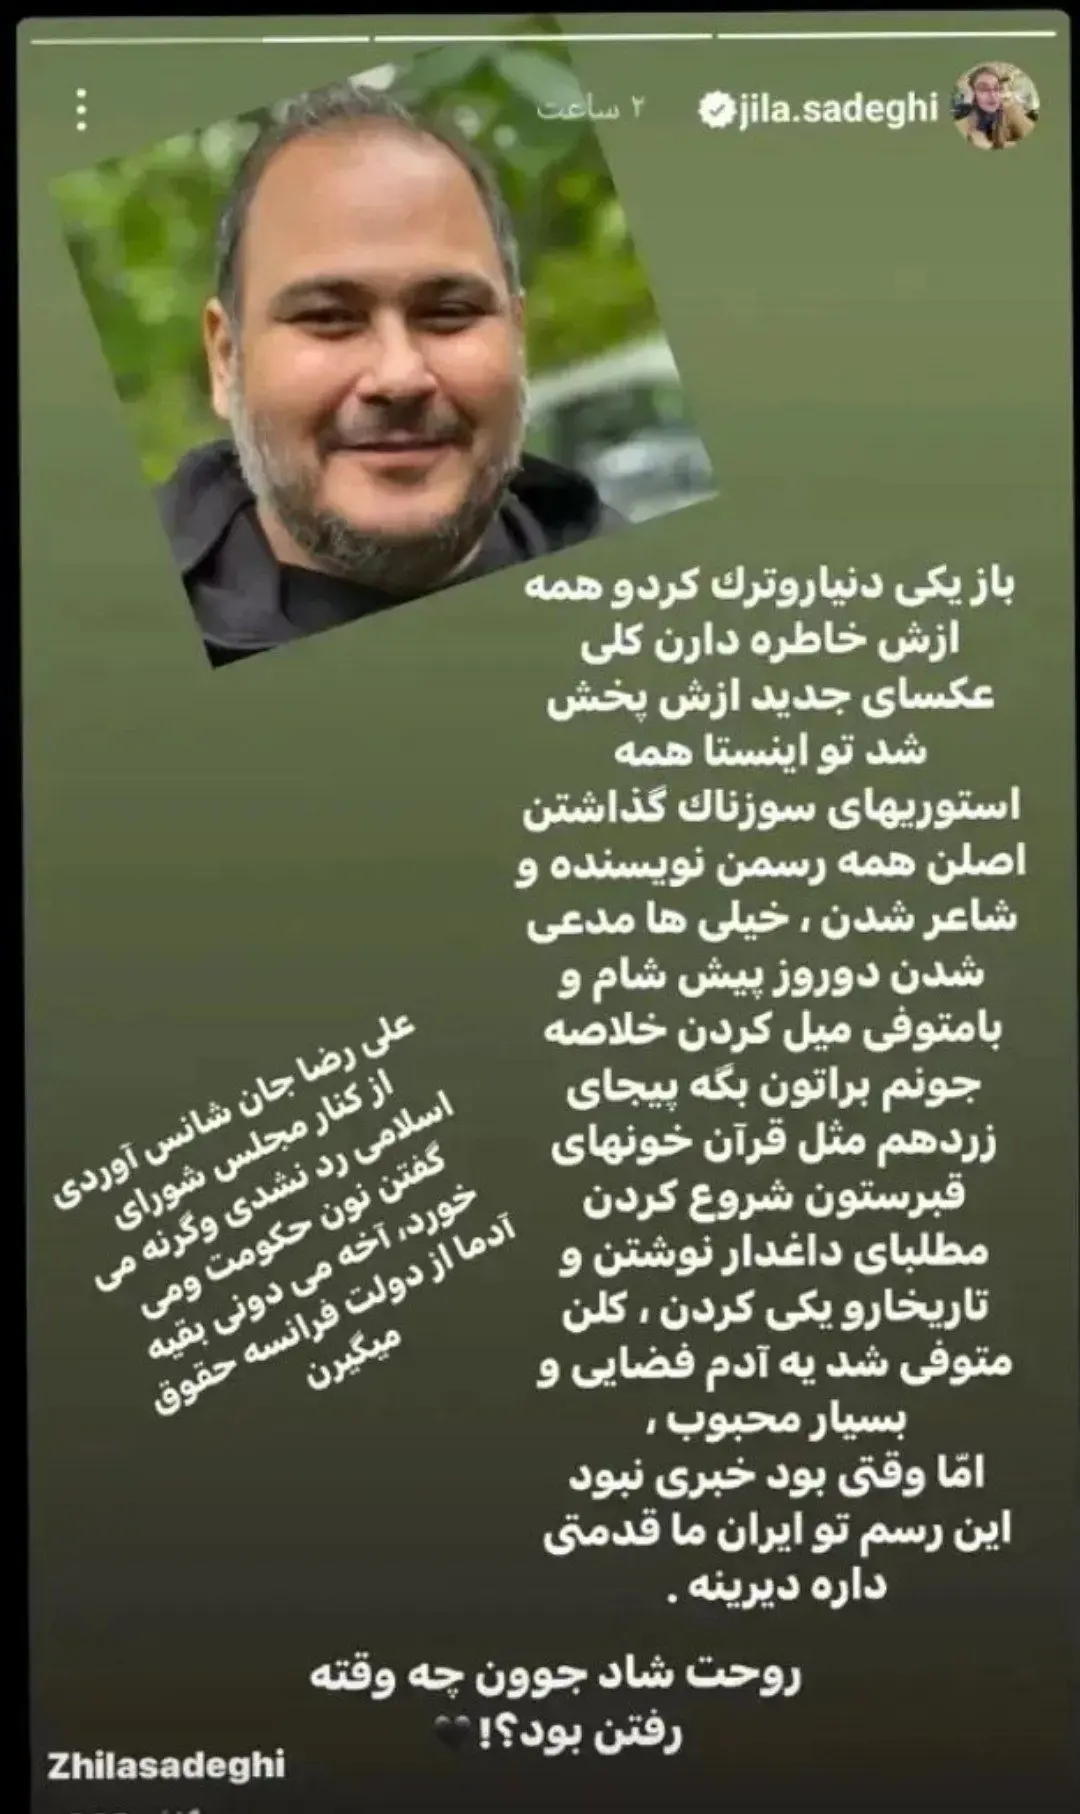 واکنش عجیب زیلا صادقی به درگذشت رضا داوود نژاد